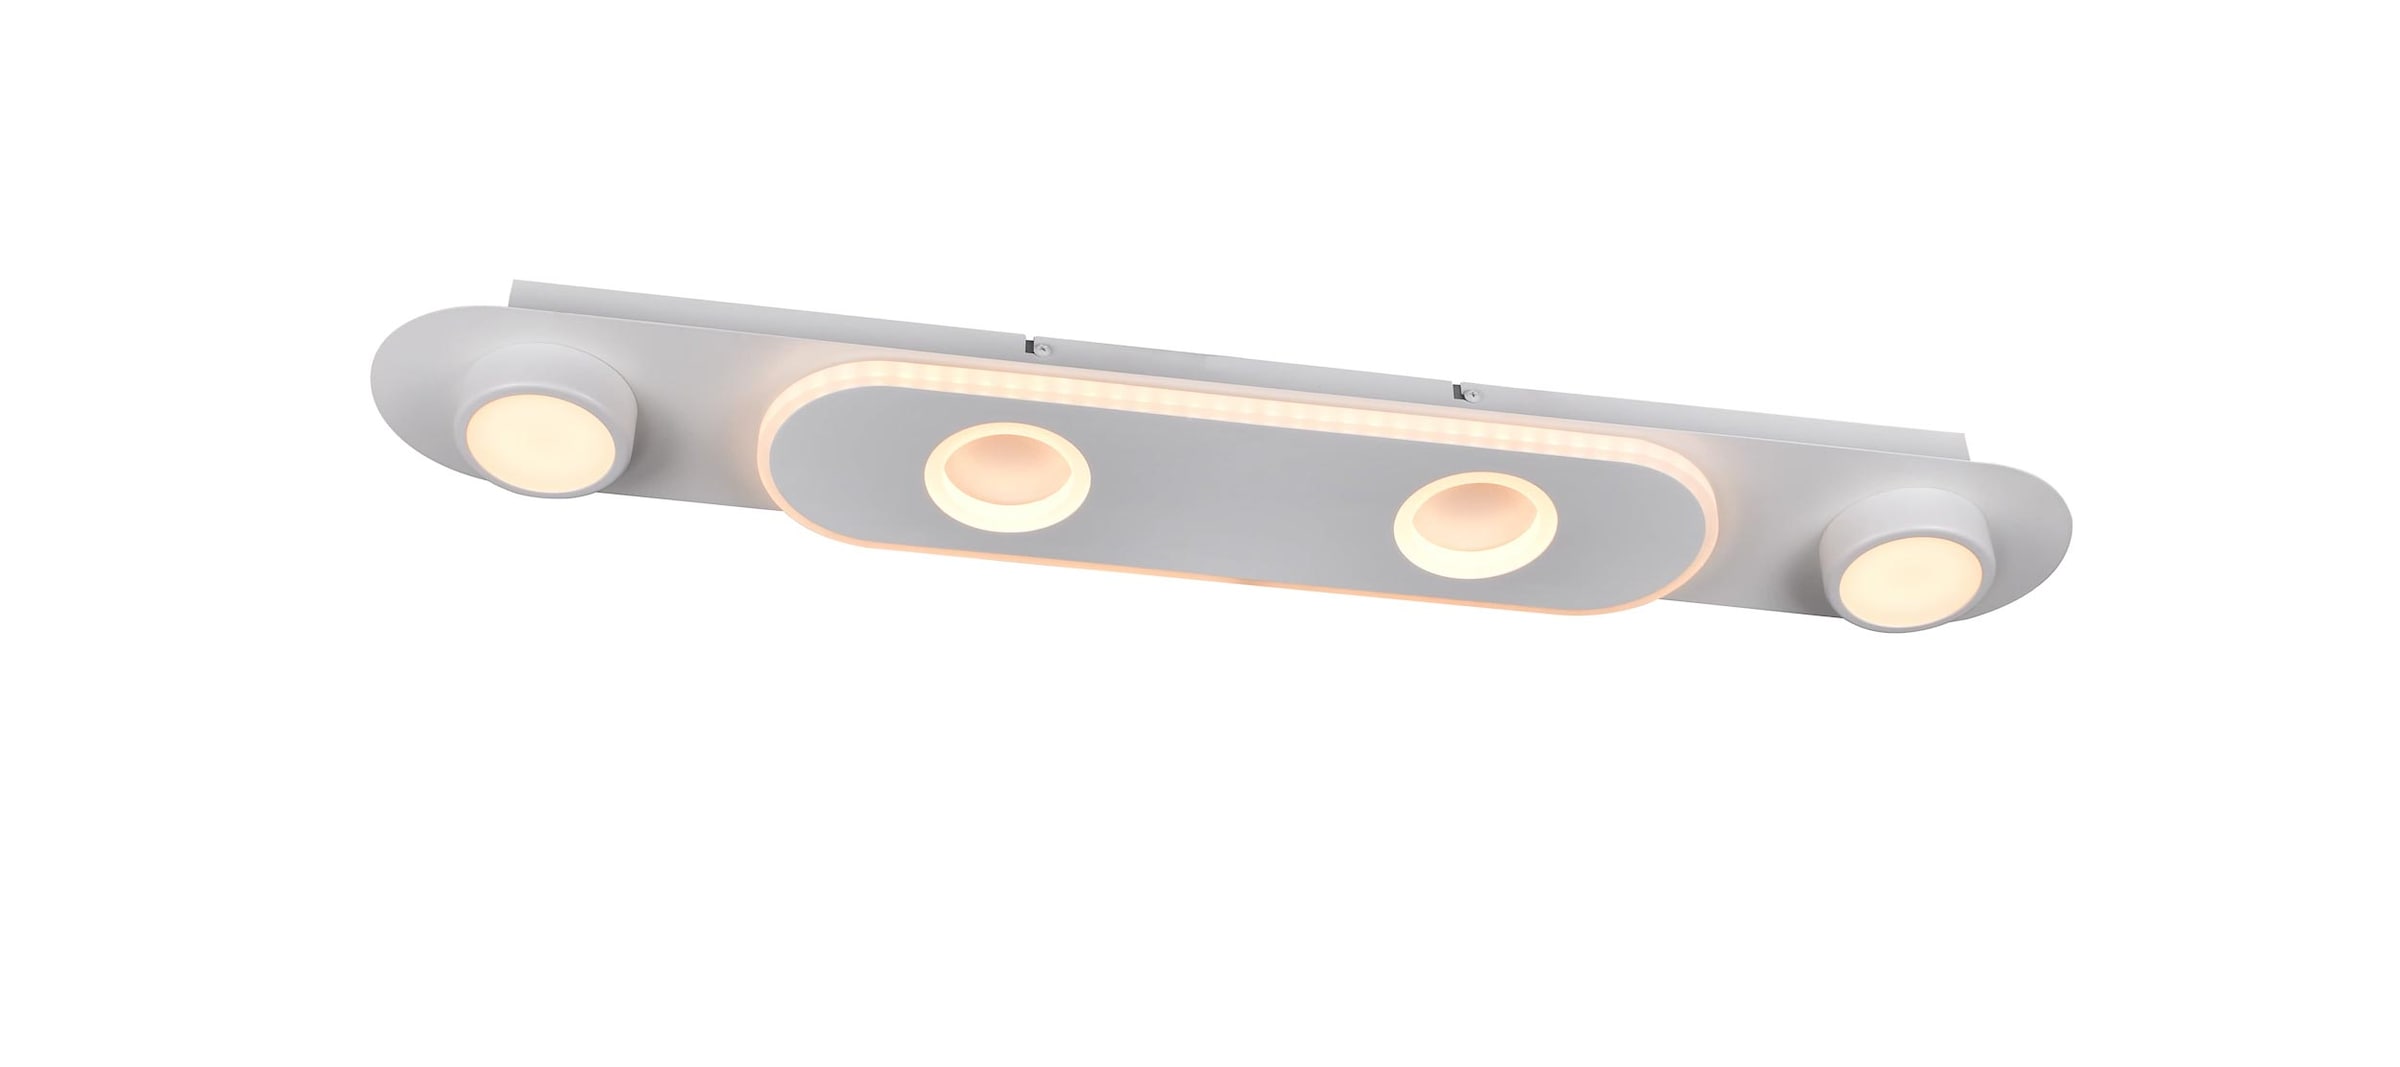 Brilliant LED Deckenstrahler »Irelia«, 1 flammig, 80 cm Breite, 3500 lm, warmweiß, schwenkbar, Metall/Kunststoff, weiß